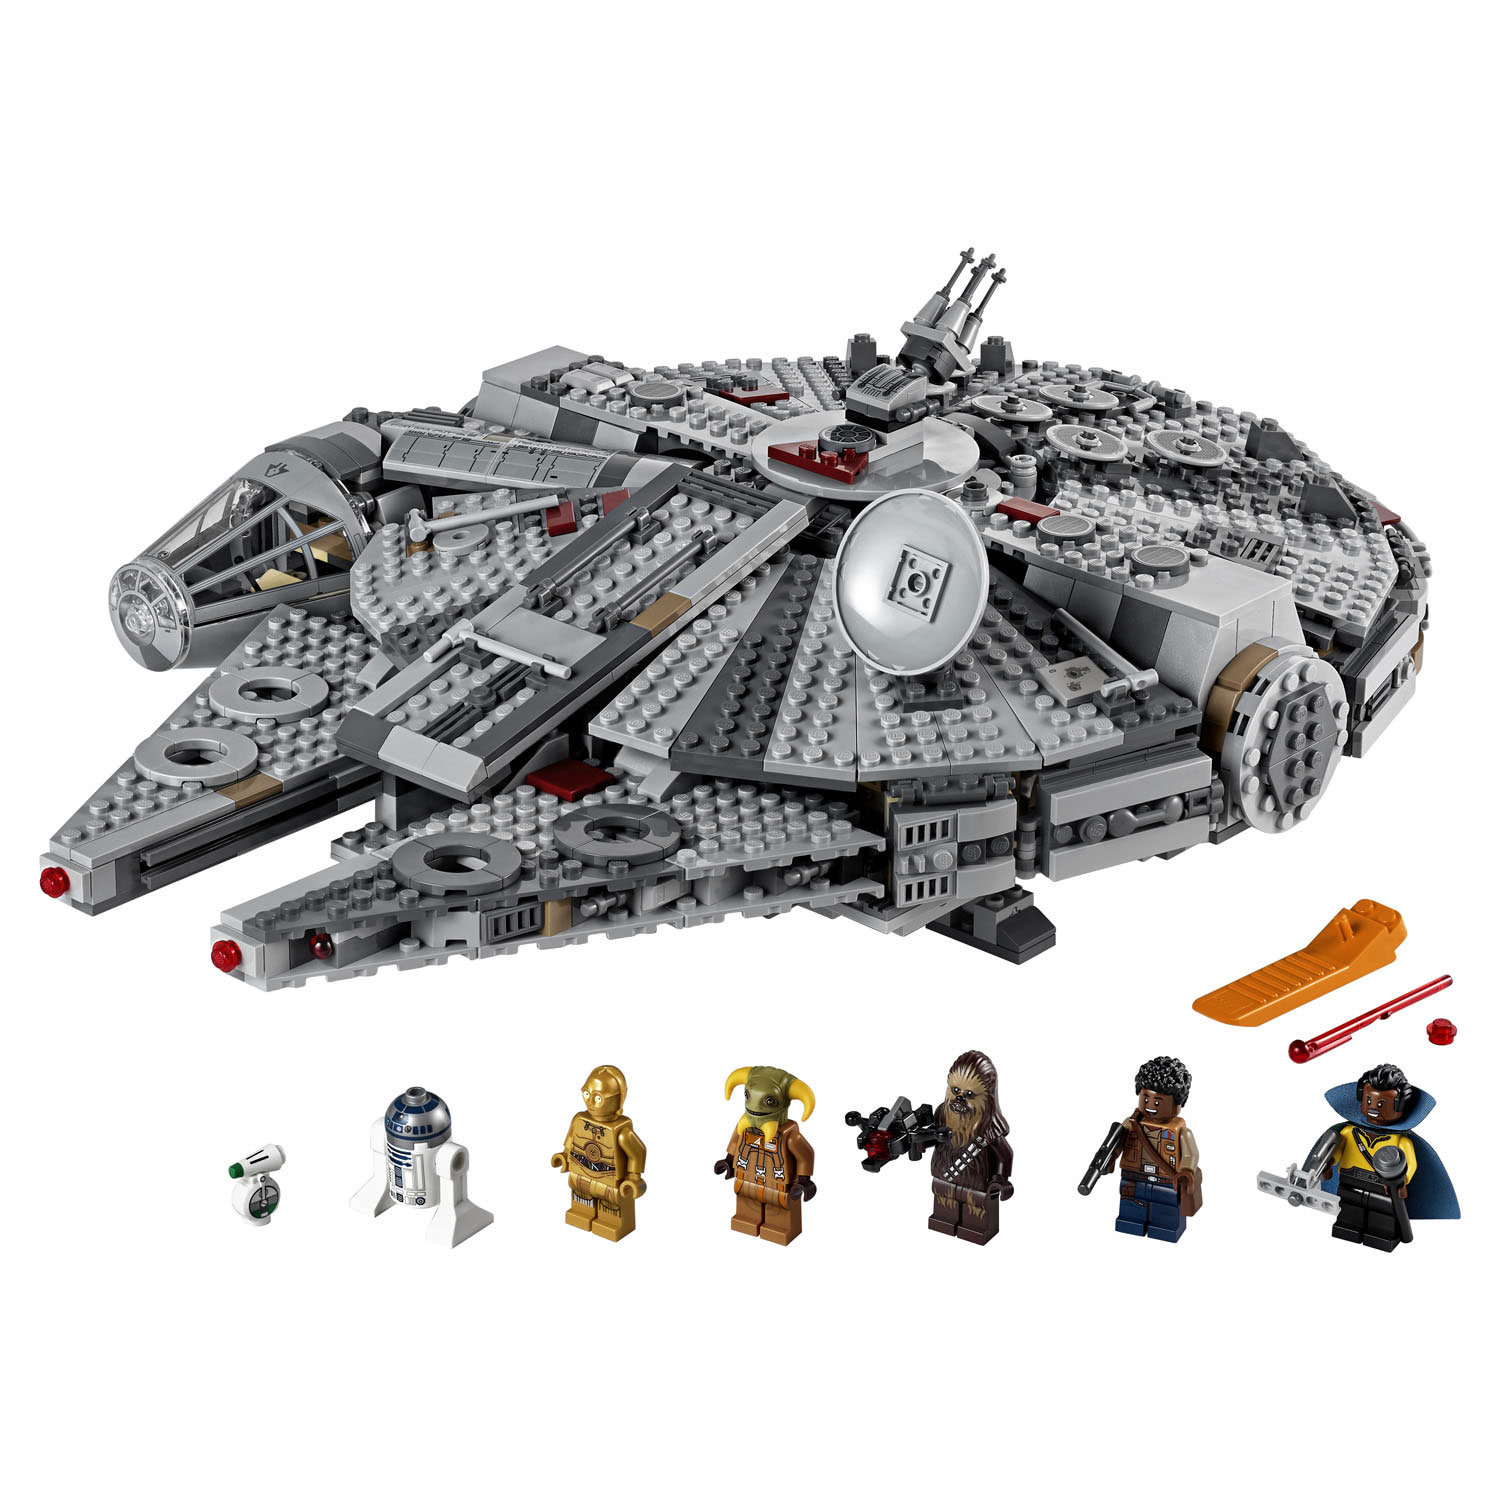 75257 LEGO Star Wars Millennium Falcon V29